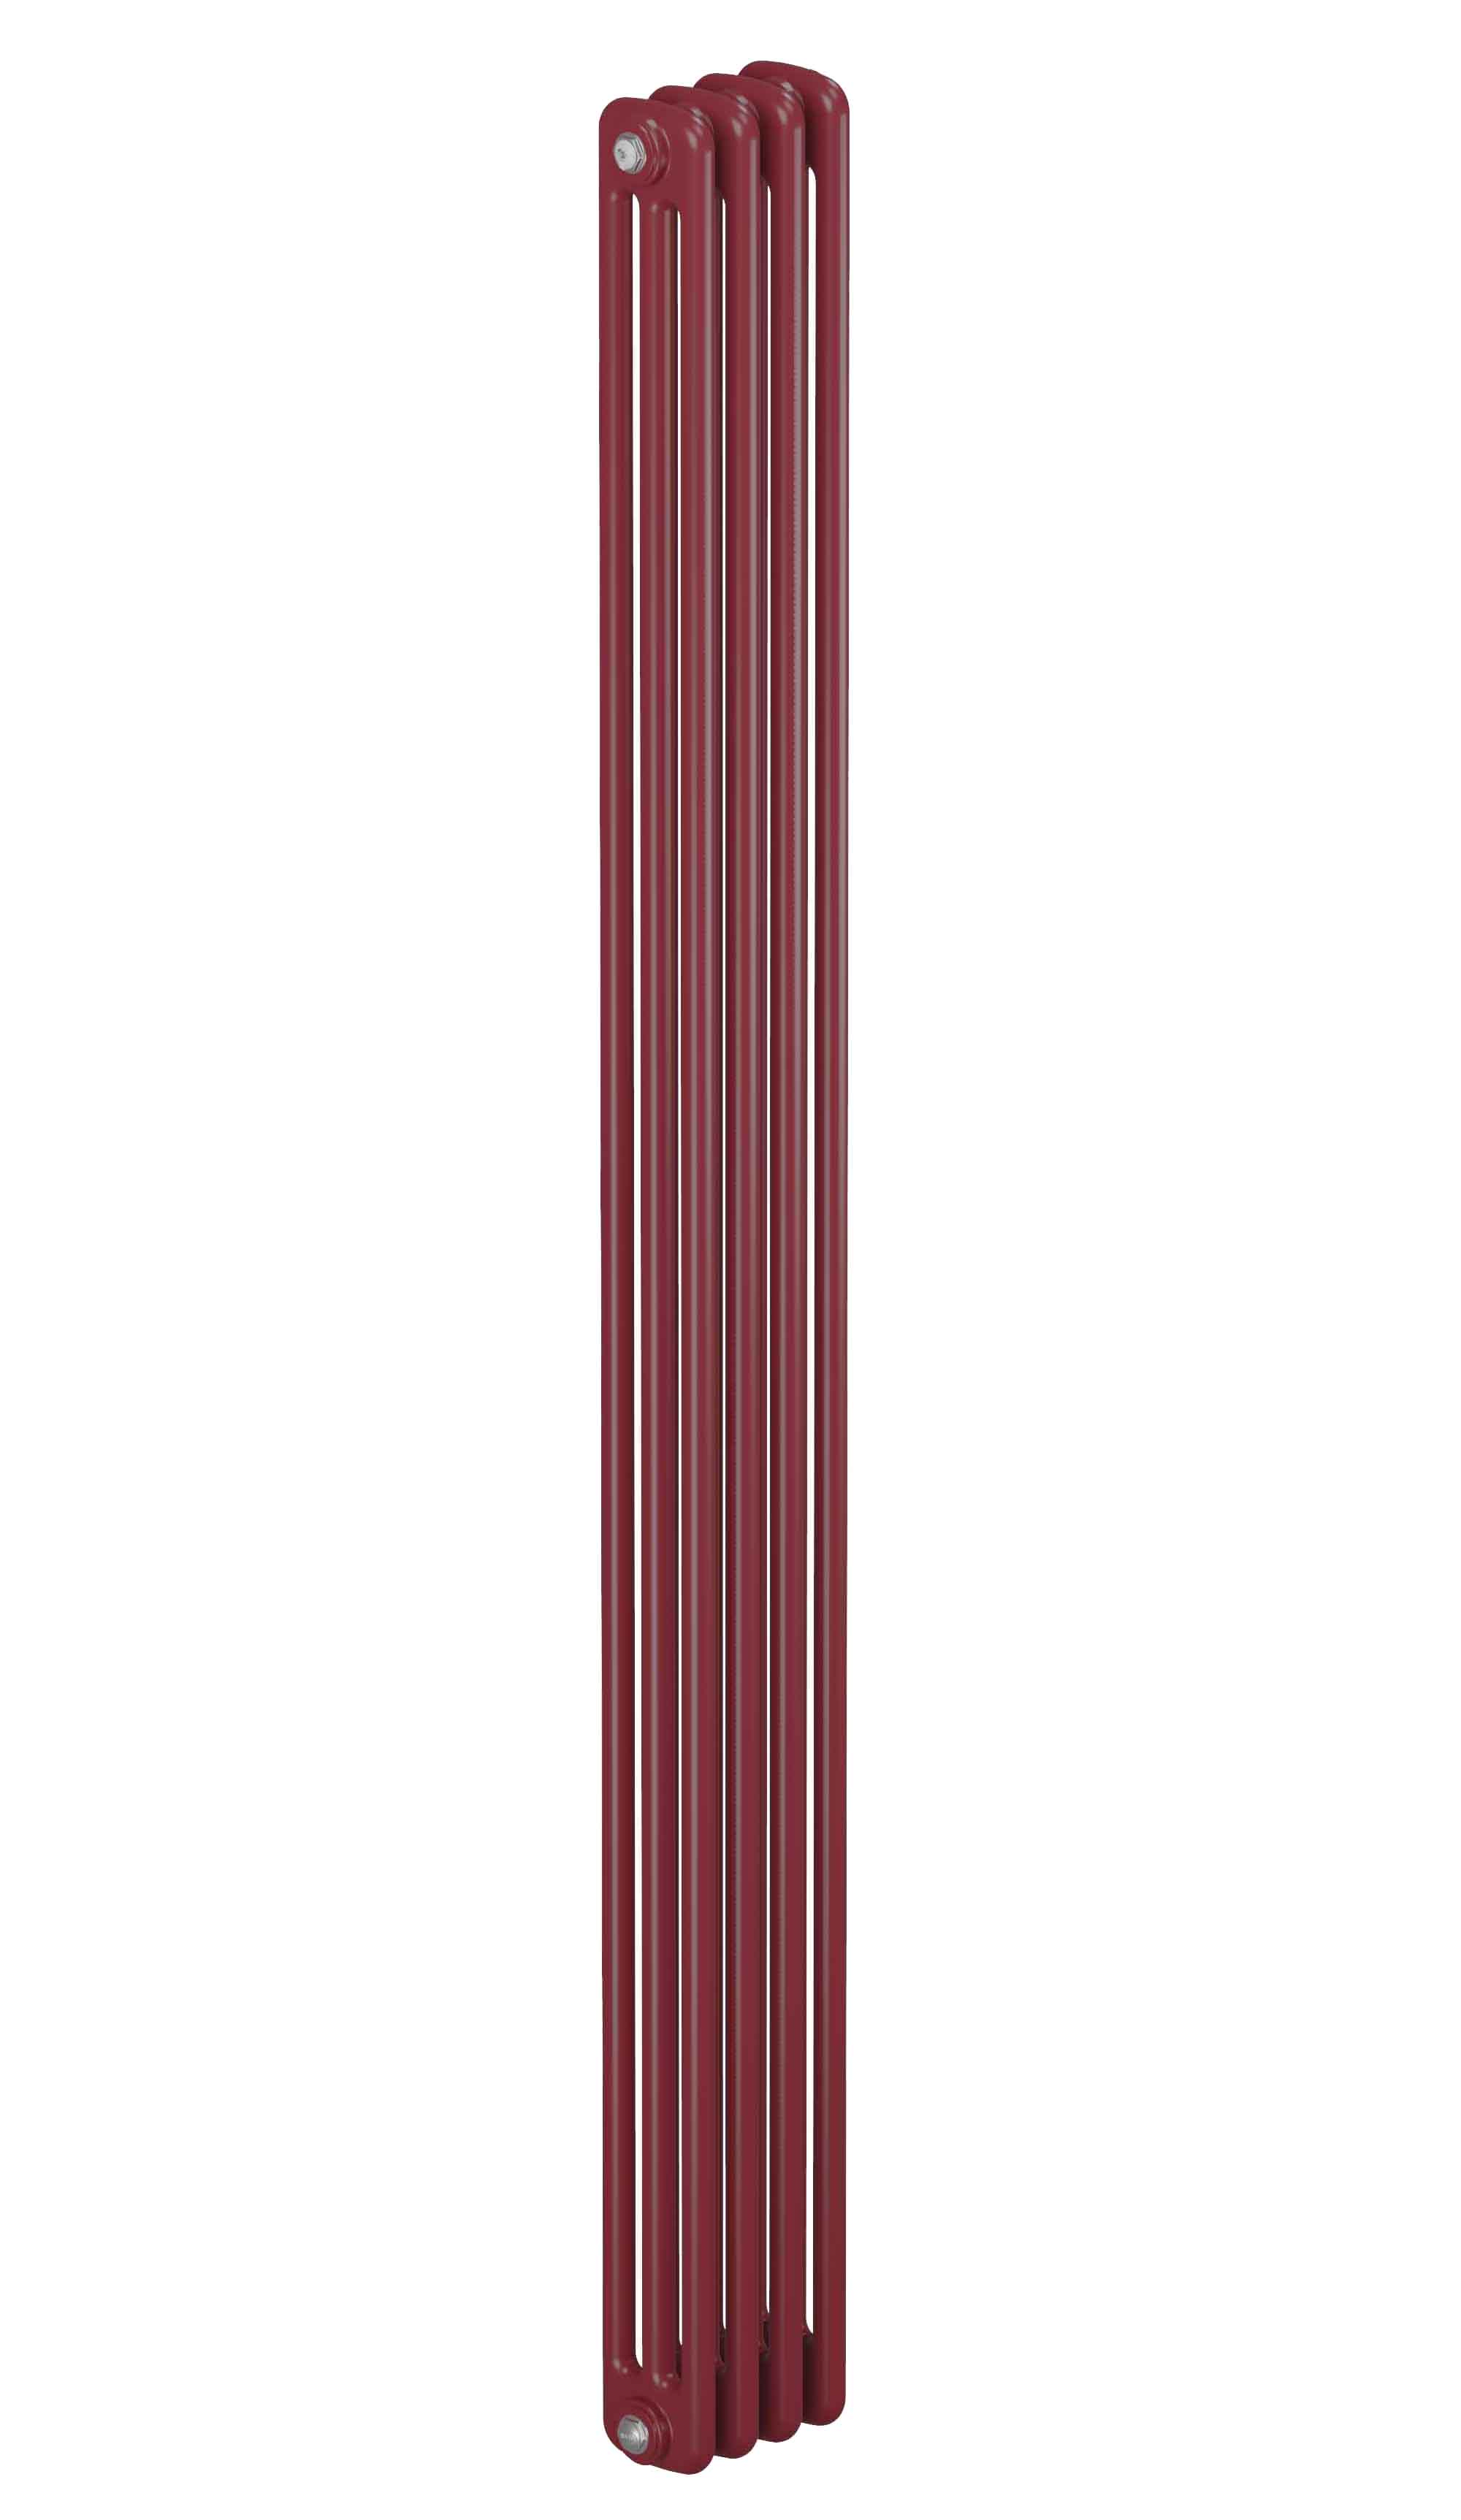 Трубчатый радиатор Rifar Tubog 3180, 6 секций, 3-колончатый, красно-коричневый (бордо), DV1